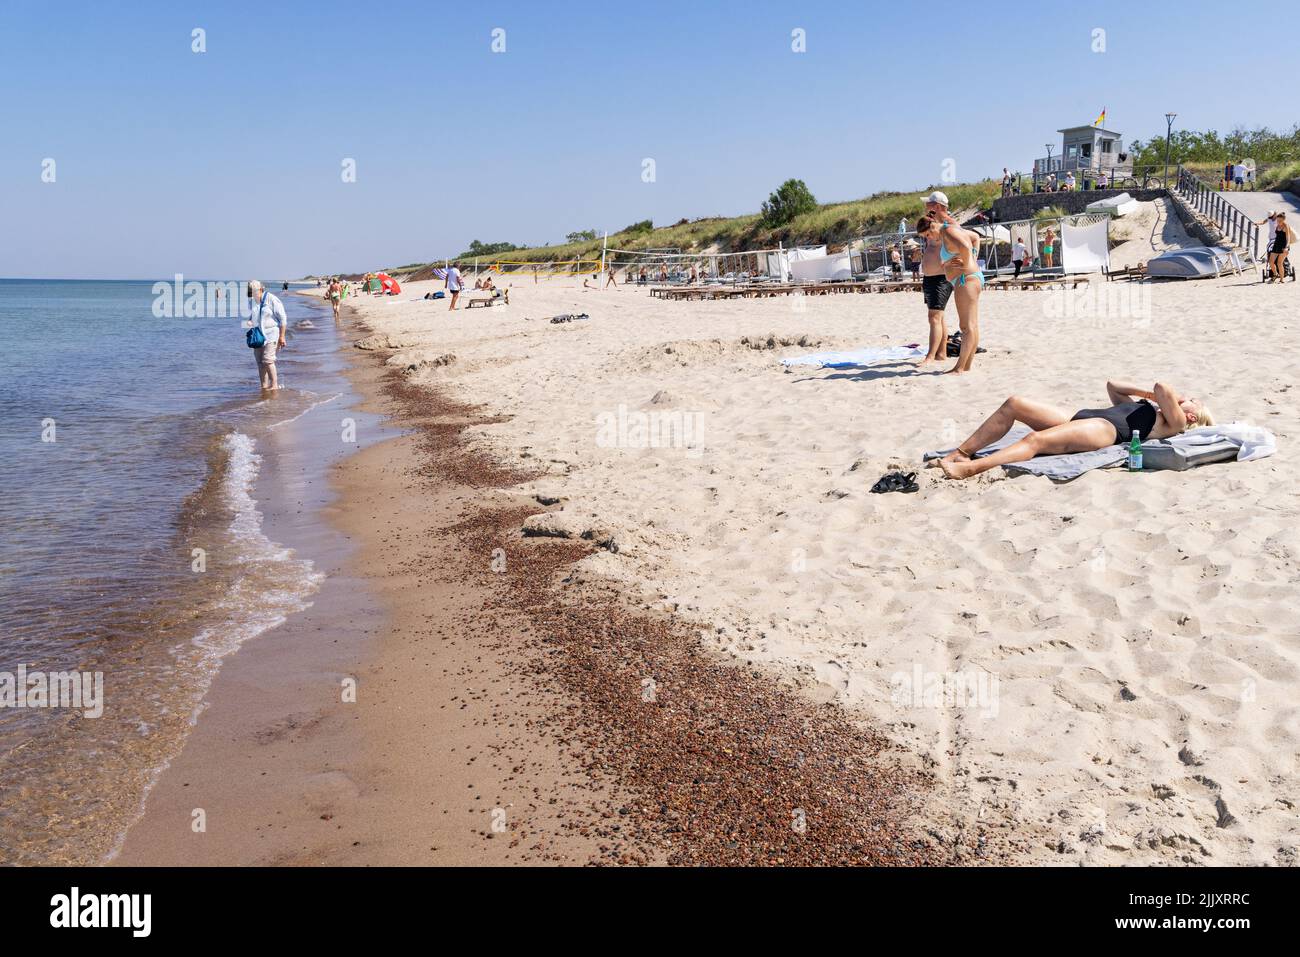 Playa de Lituania; gente que disfruta de la playa de arena en verano en la costa del Mar Báltico en el Estrecho de Curlandia, Lituania, Europa Foto de stock